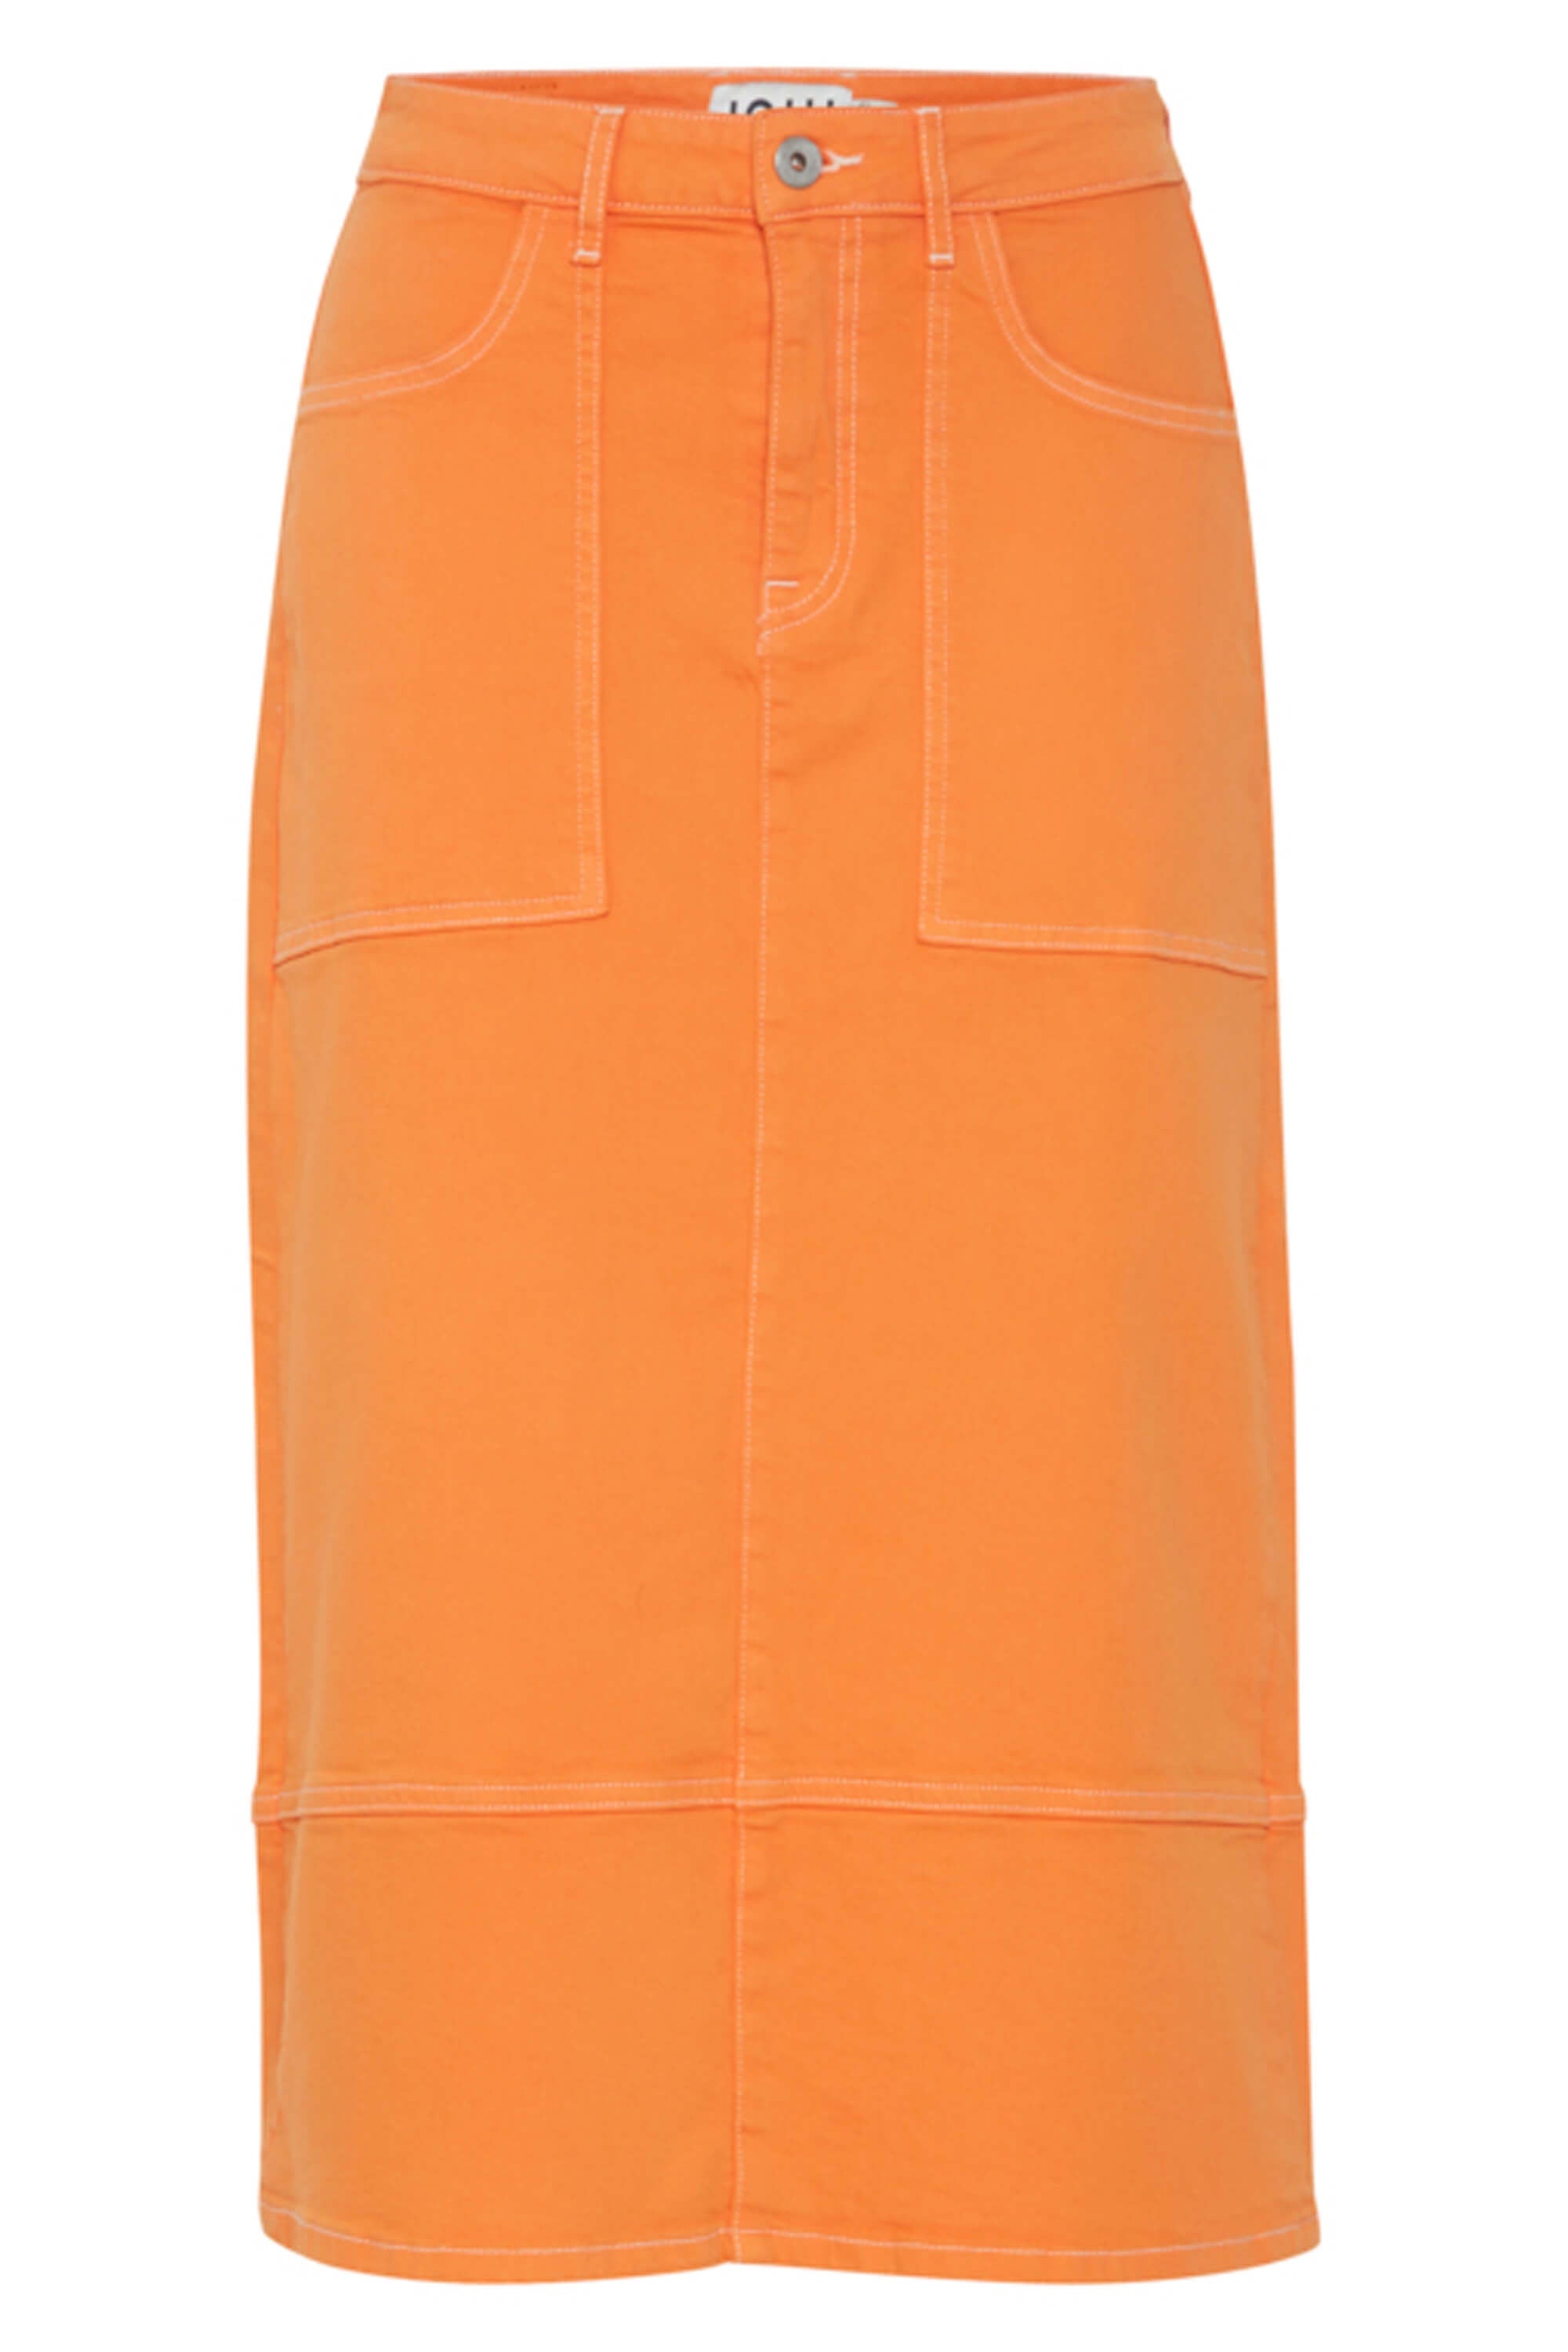 Ichi Cenny Denim Skirt Orange